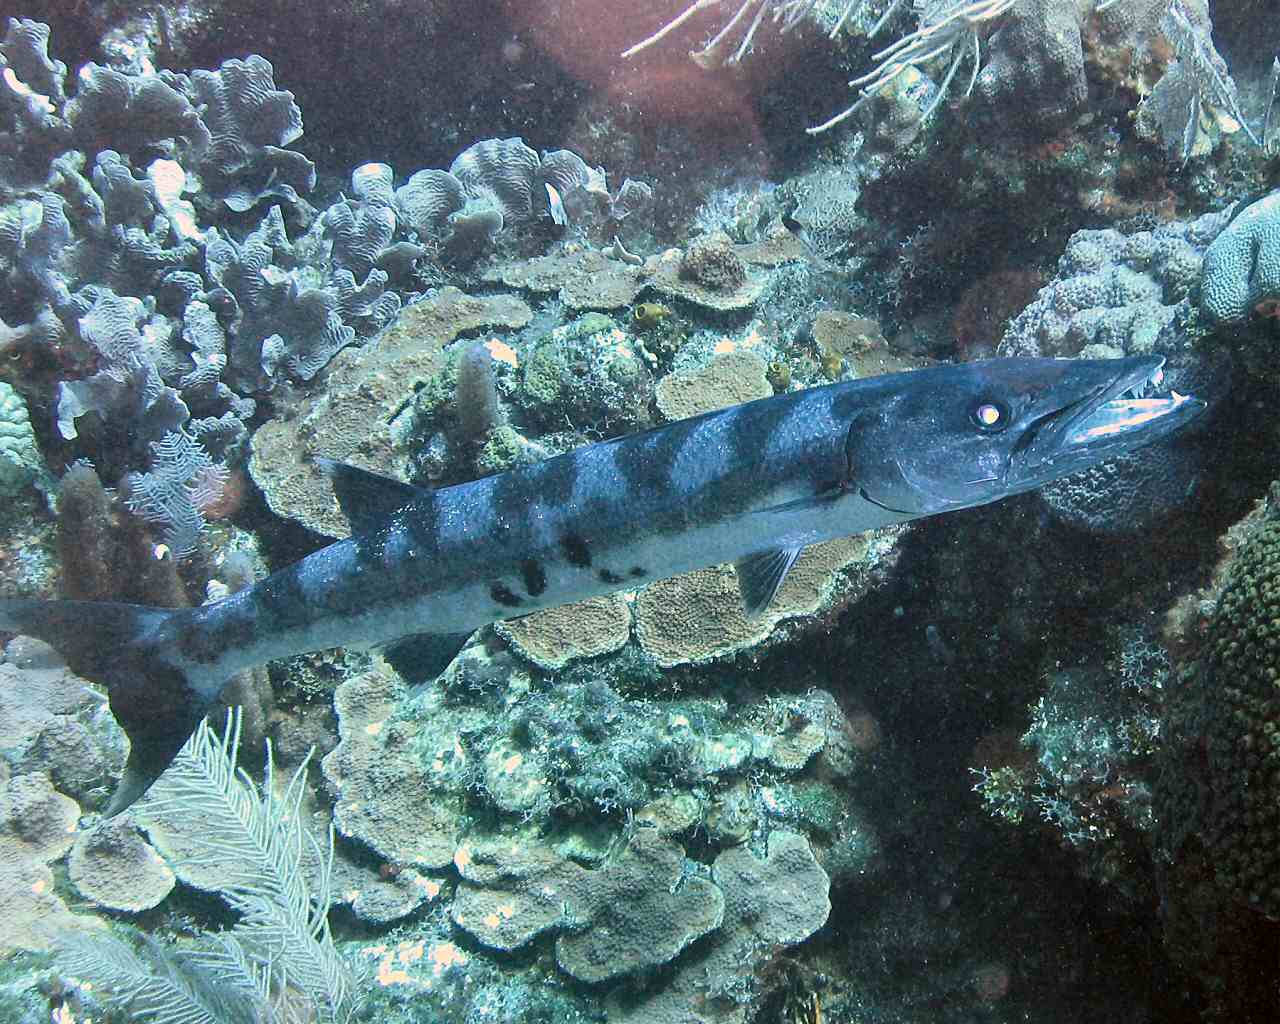 Barracuda at Overheat Reef